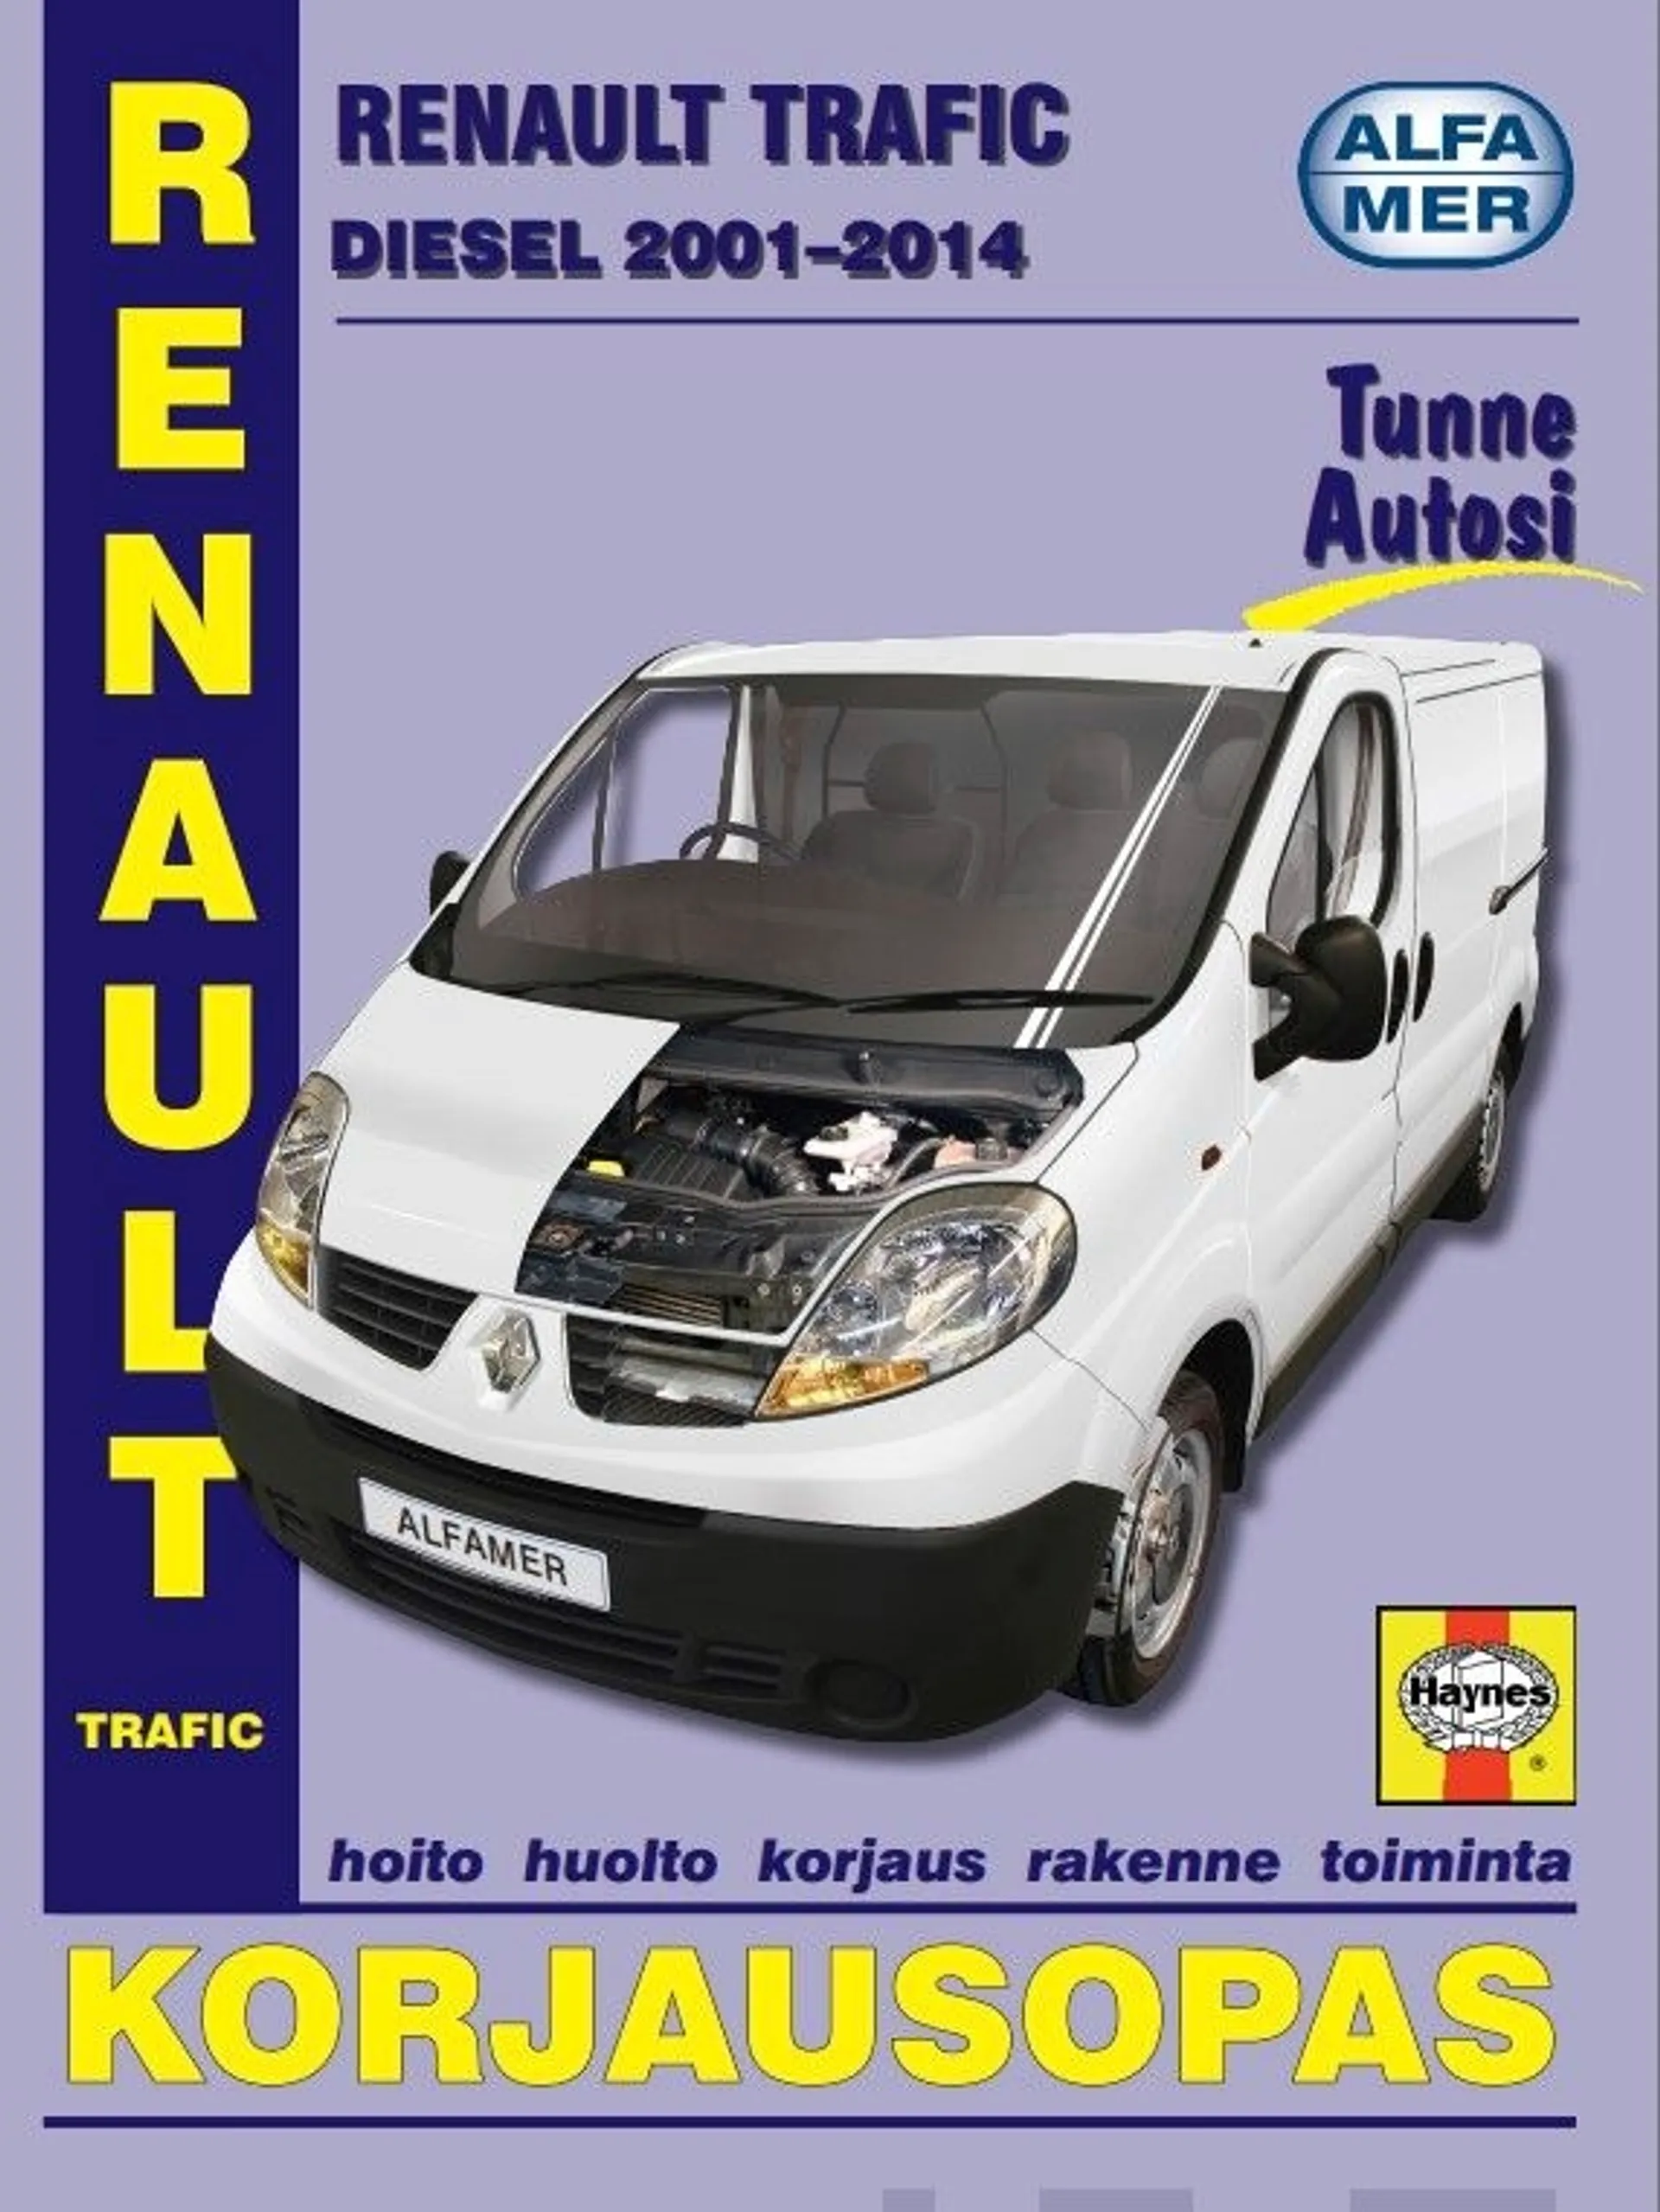 Esko, Renault Trafic diesel 2001-2014